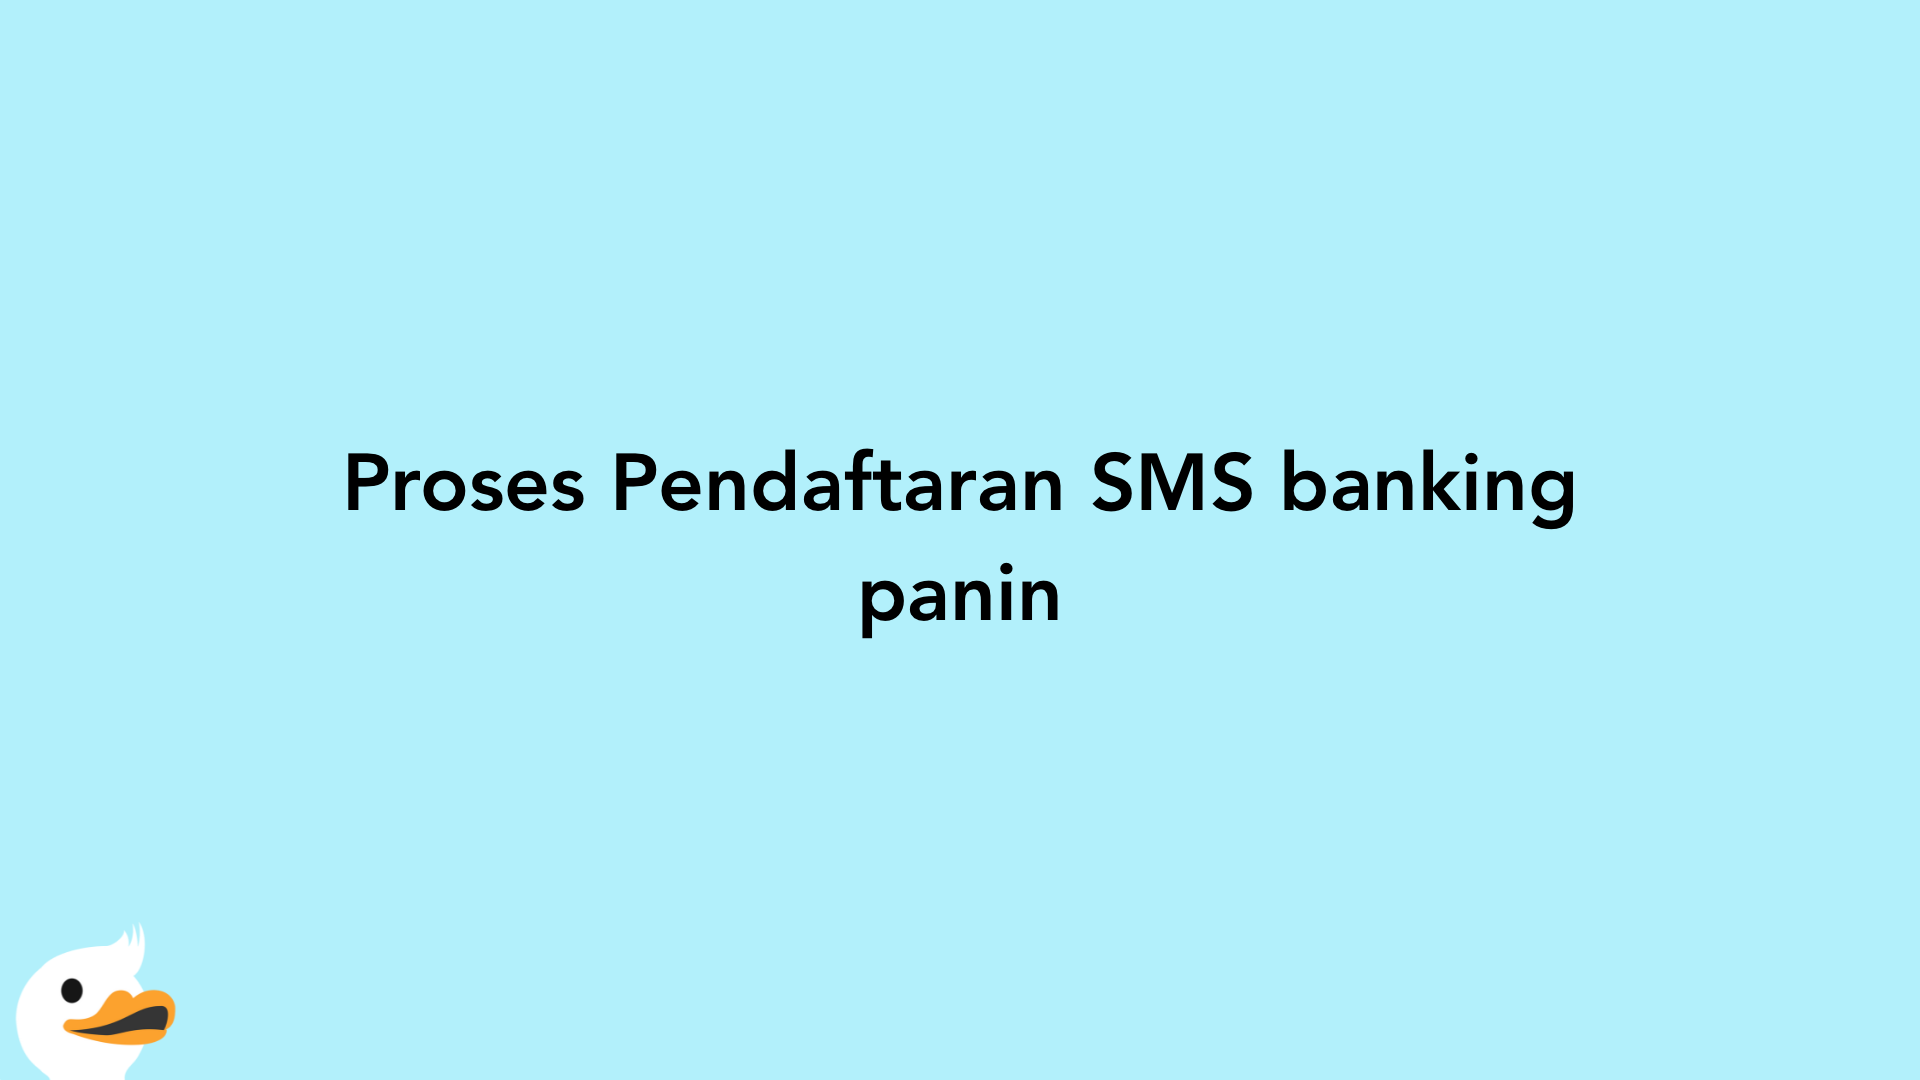 Proses Pendaftaran SMS banking panin